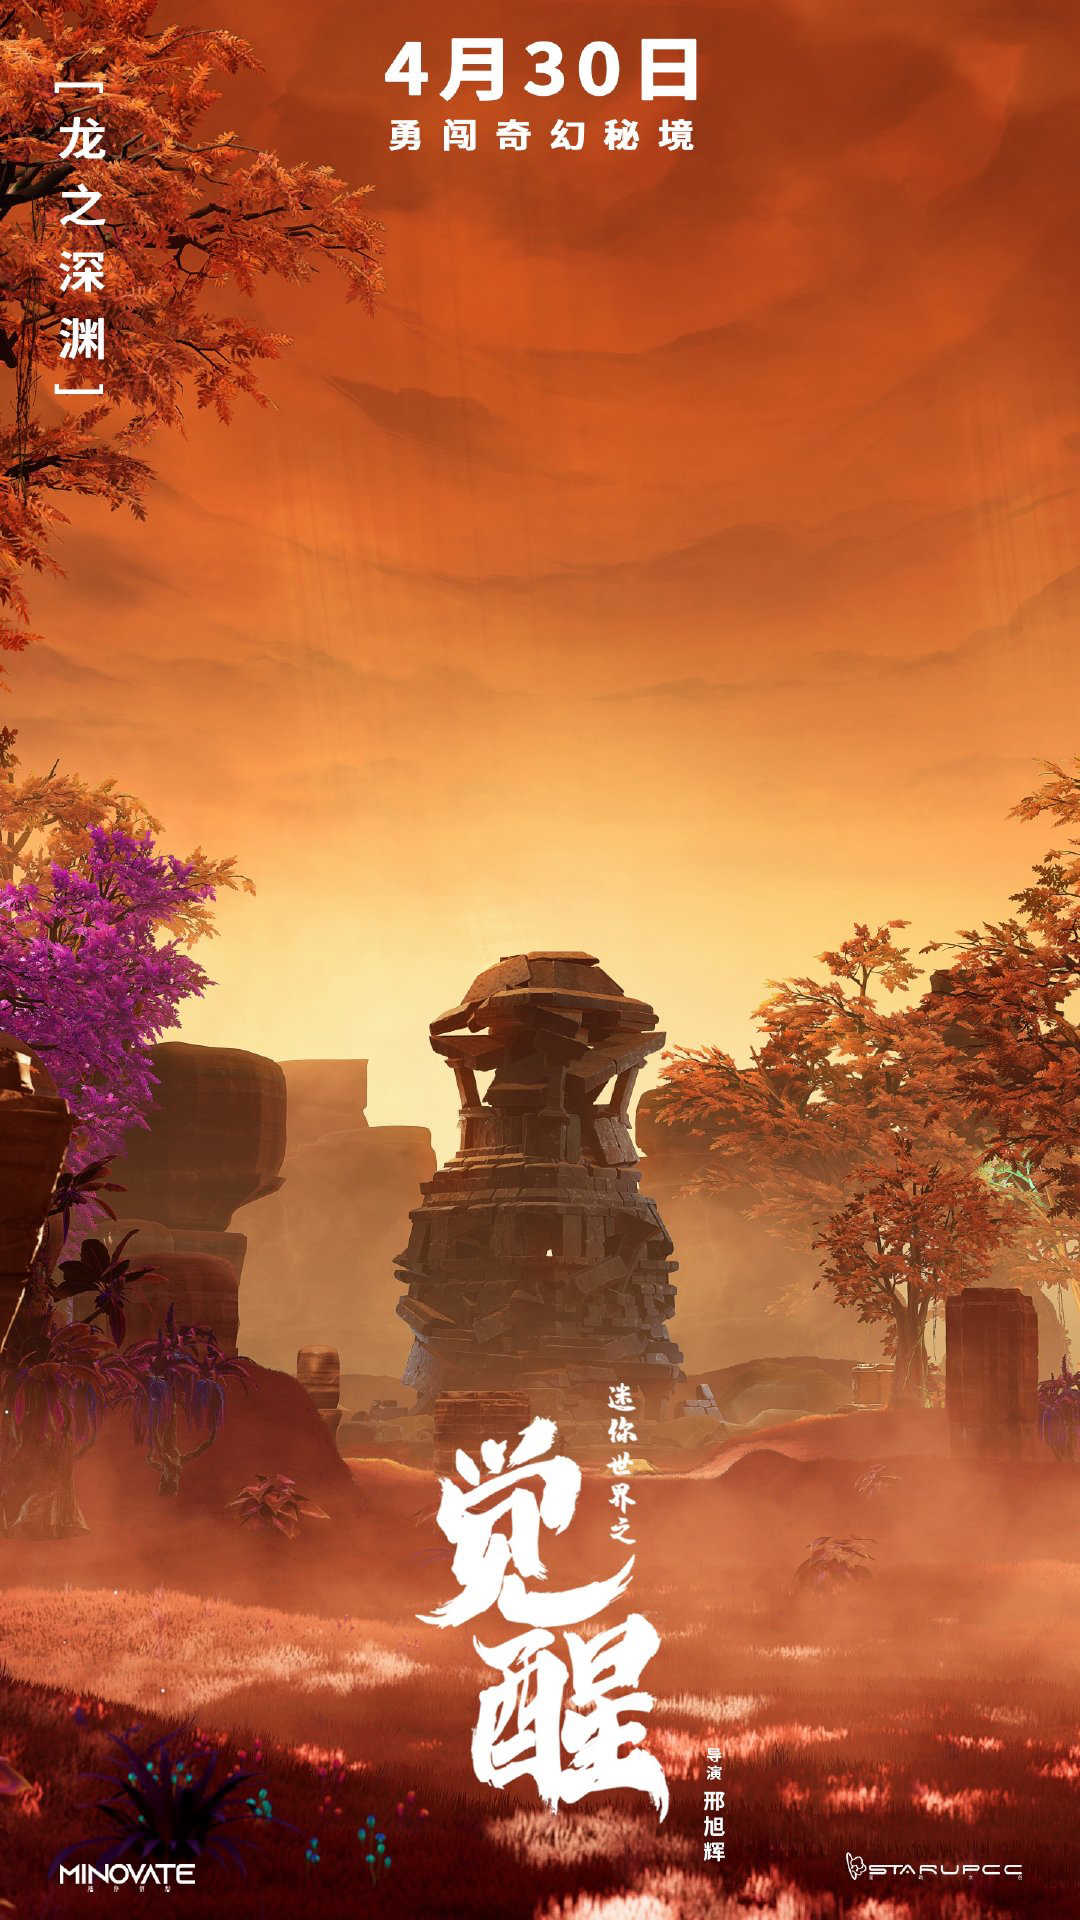 首部沙盒游戏IP电影《迷你世界之觉醒》公布新海报